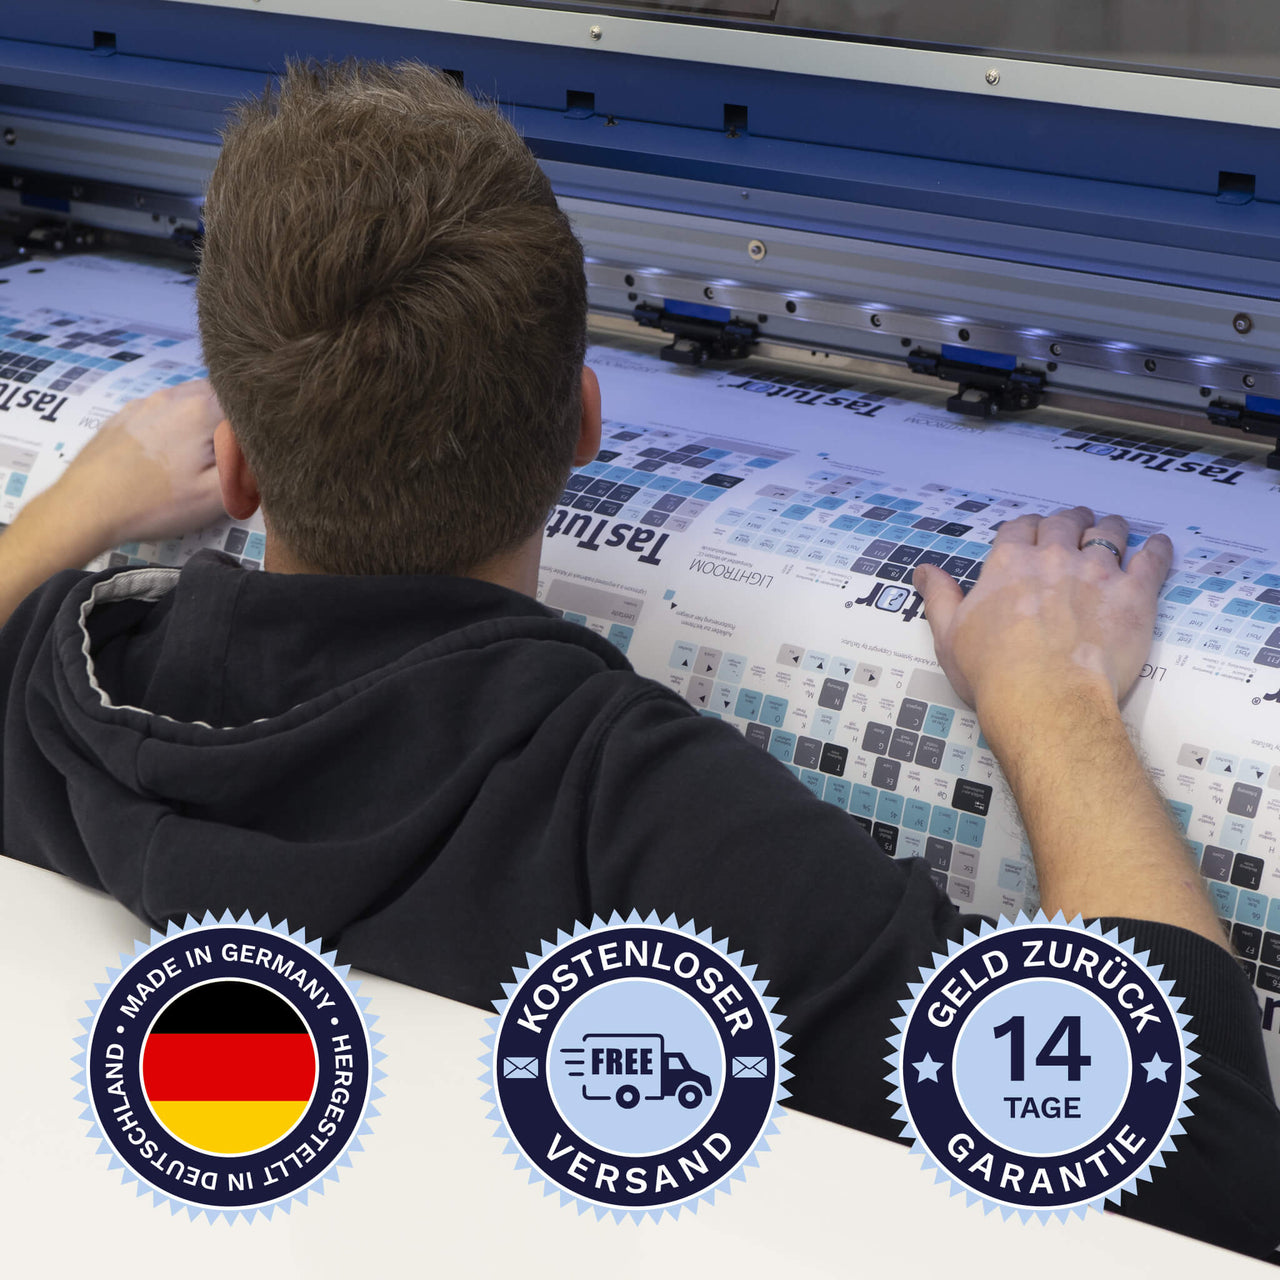 Audition Tastaturaufkleber werden in Deutschland hergestellt. Der Versand ist kostenlos und wir gewährleisten 14 Tage Geld zurück Garantie | TasTutor